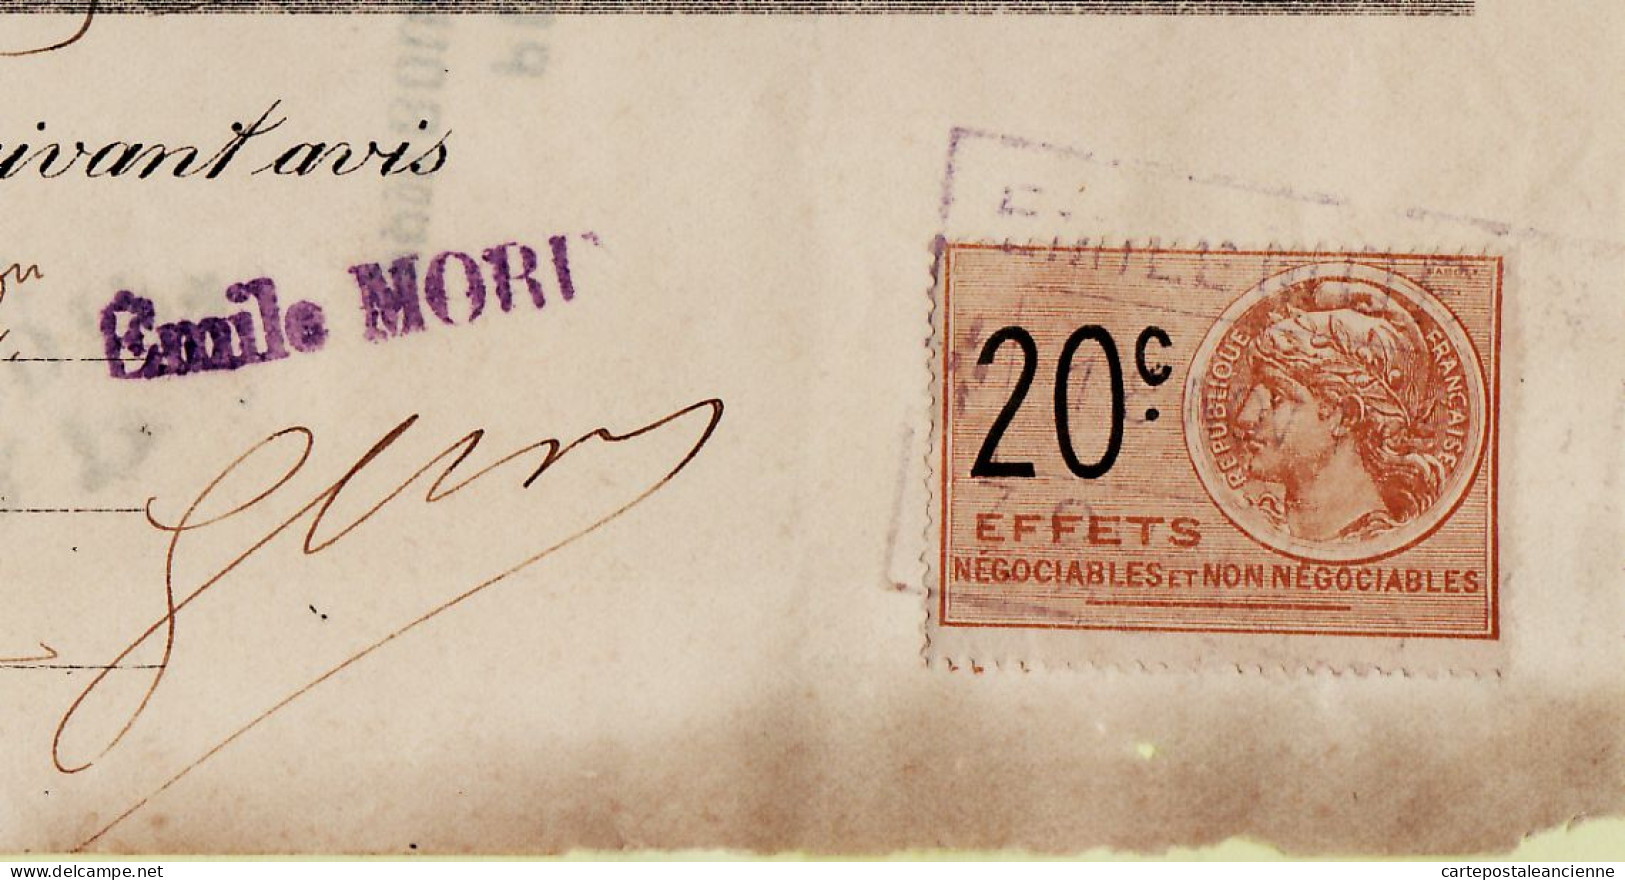 31267 / Carrosserie Armurerie MORIN Angers Lettre De Change 1925 à LUSSON Scierie Varades Timbre Fiscal 20cts - Letras De Cambio